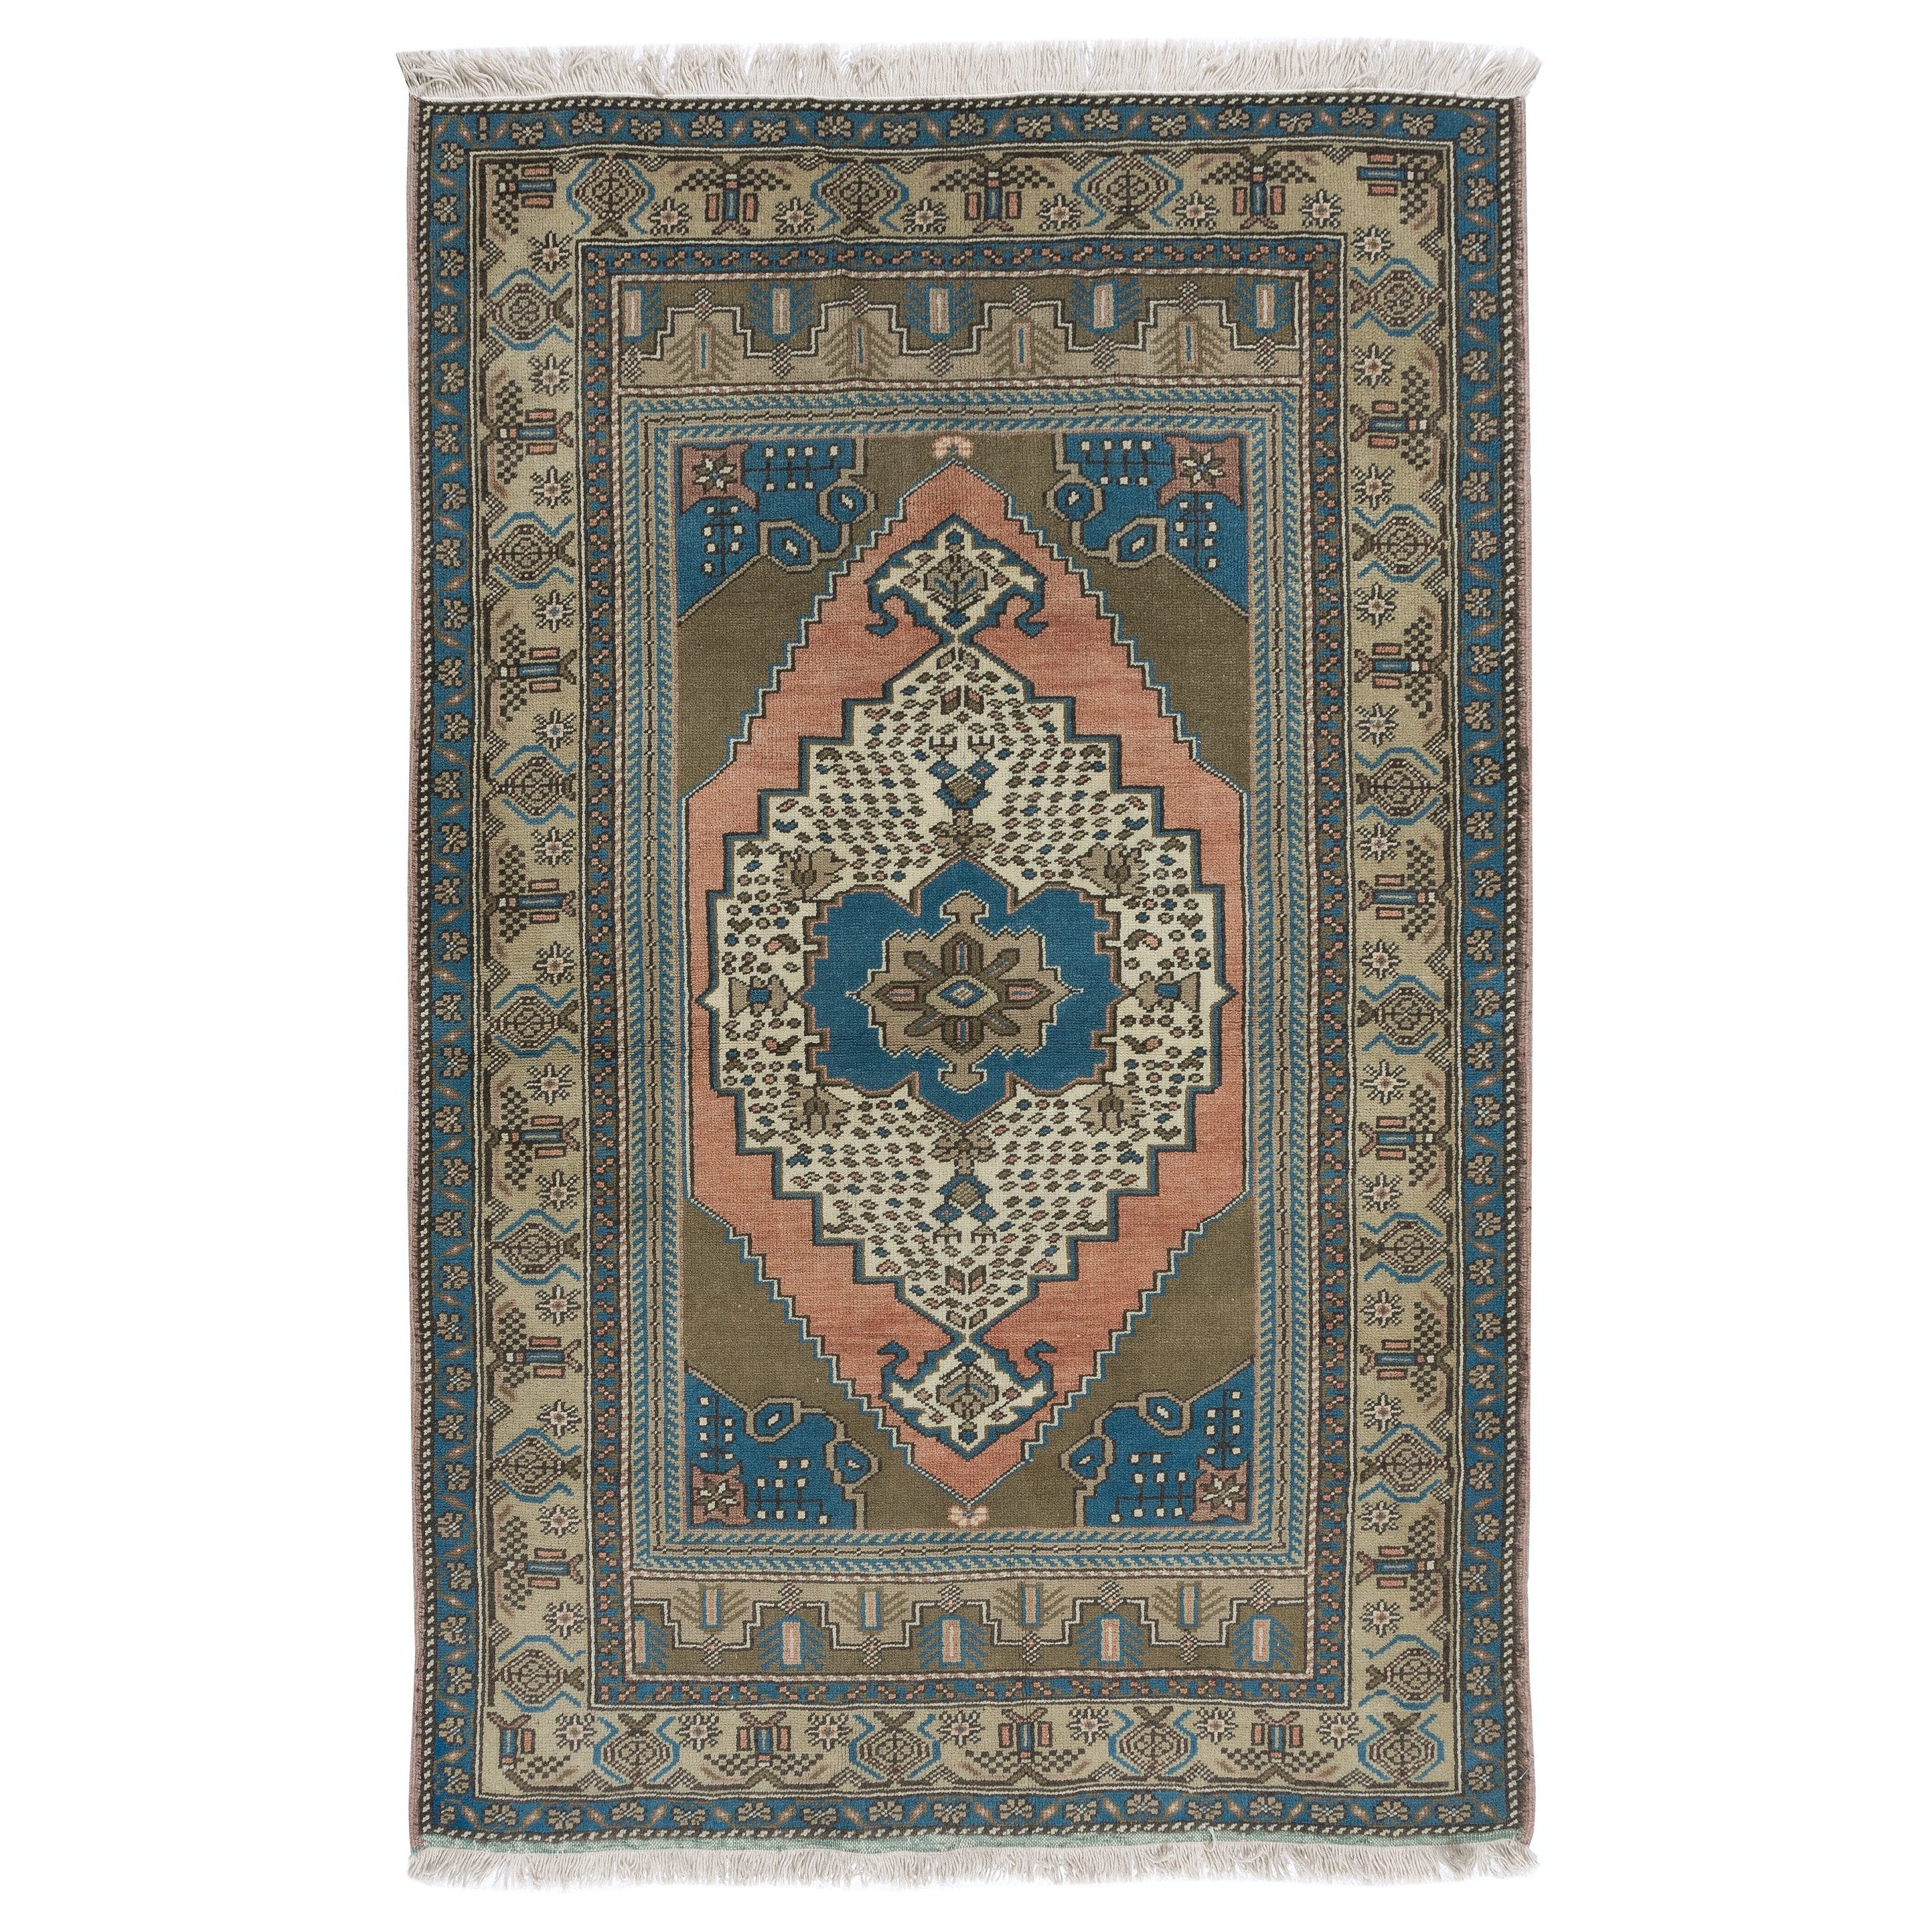 4x6 Ft One of a Pair Vintage Turkish Wool Tribal Rug, Handmade Oriental Carpet